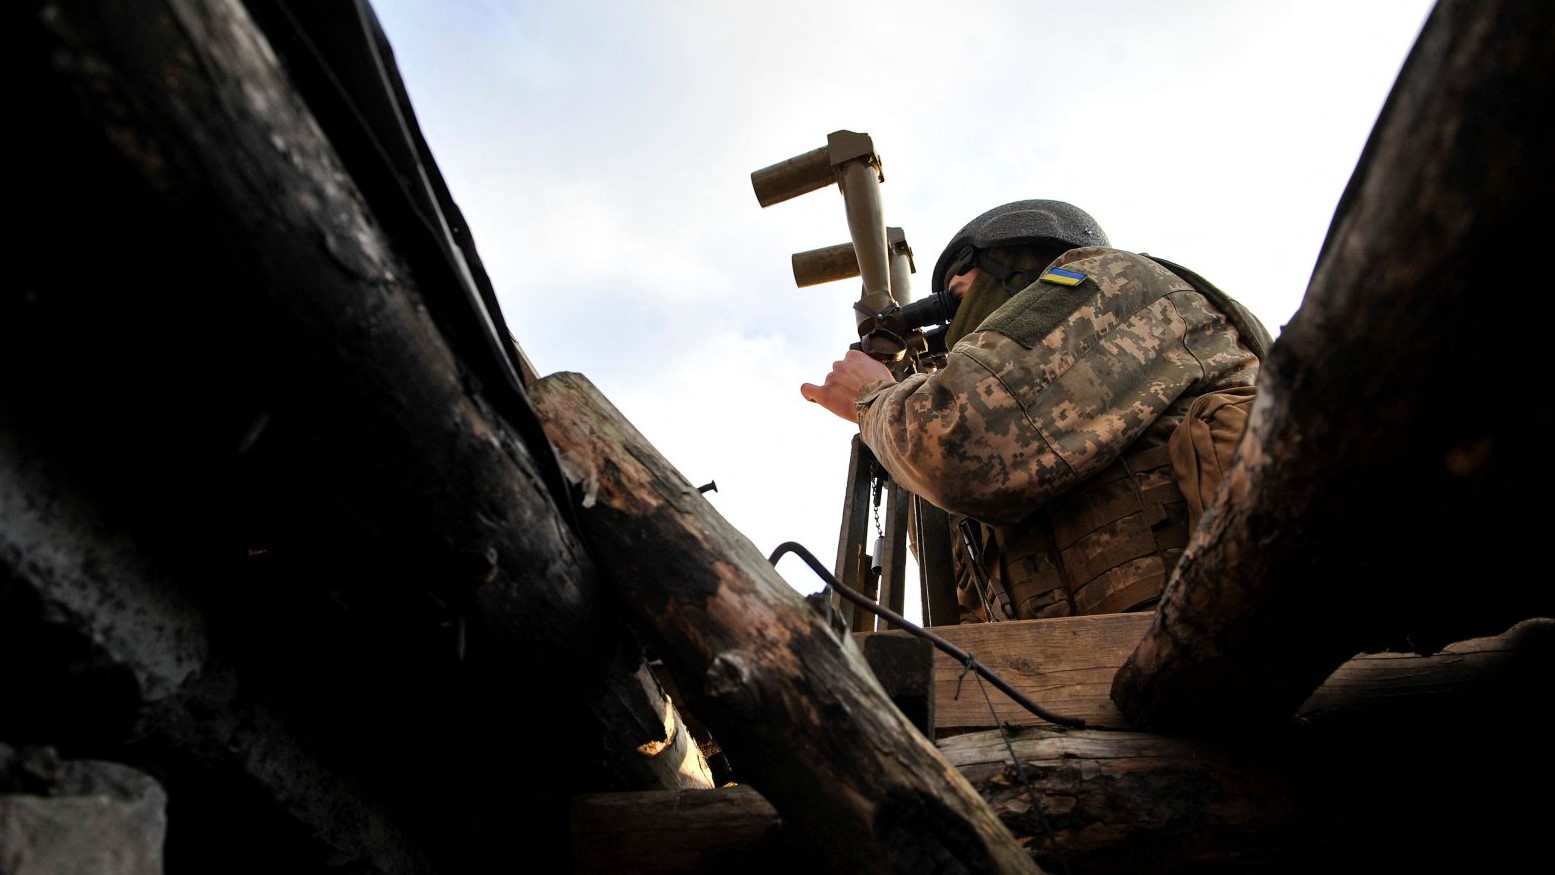 جندي أوكراني ينظر من خلال منظار في موقع على خط المواجهة مع الانفصاليين المدعومين من روسيا بالقرب من قرية تالاكيفكا في منطقة دونيتسك في أوكرانيا، 24 نوفمبر 2021